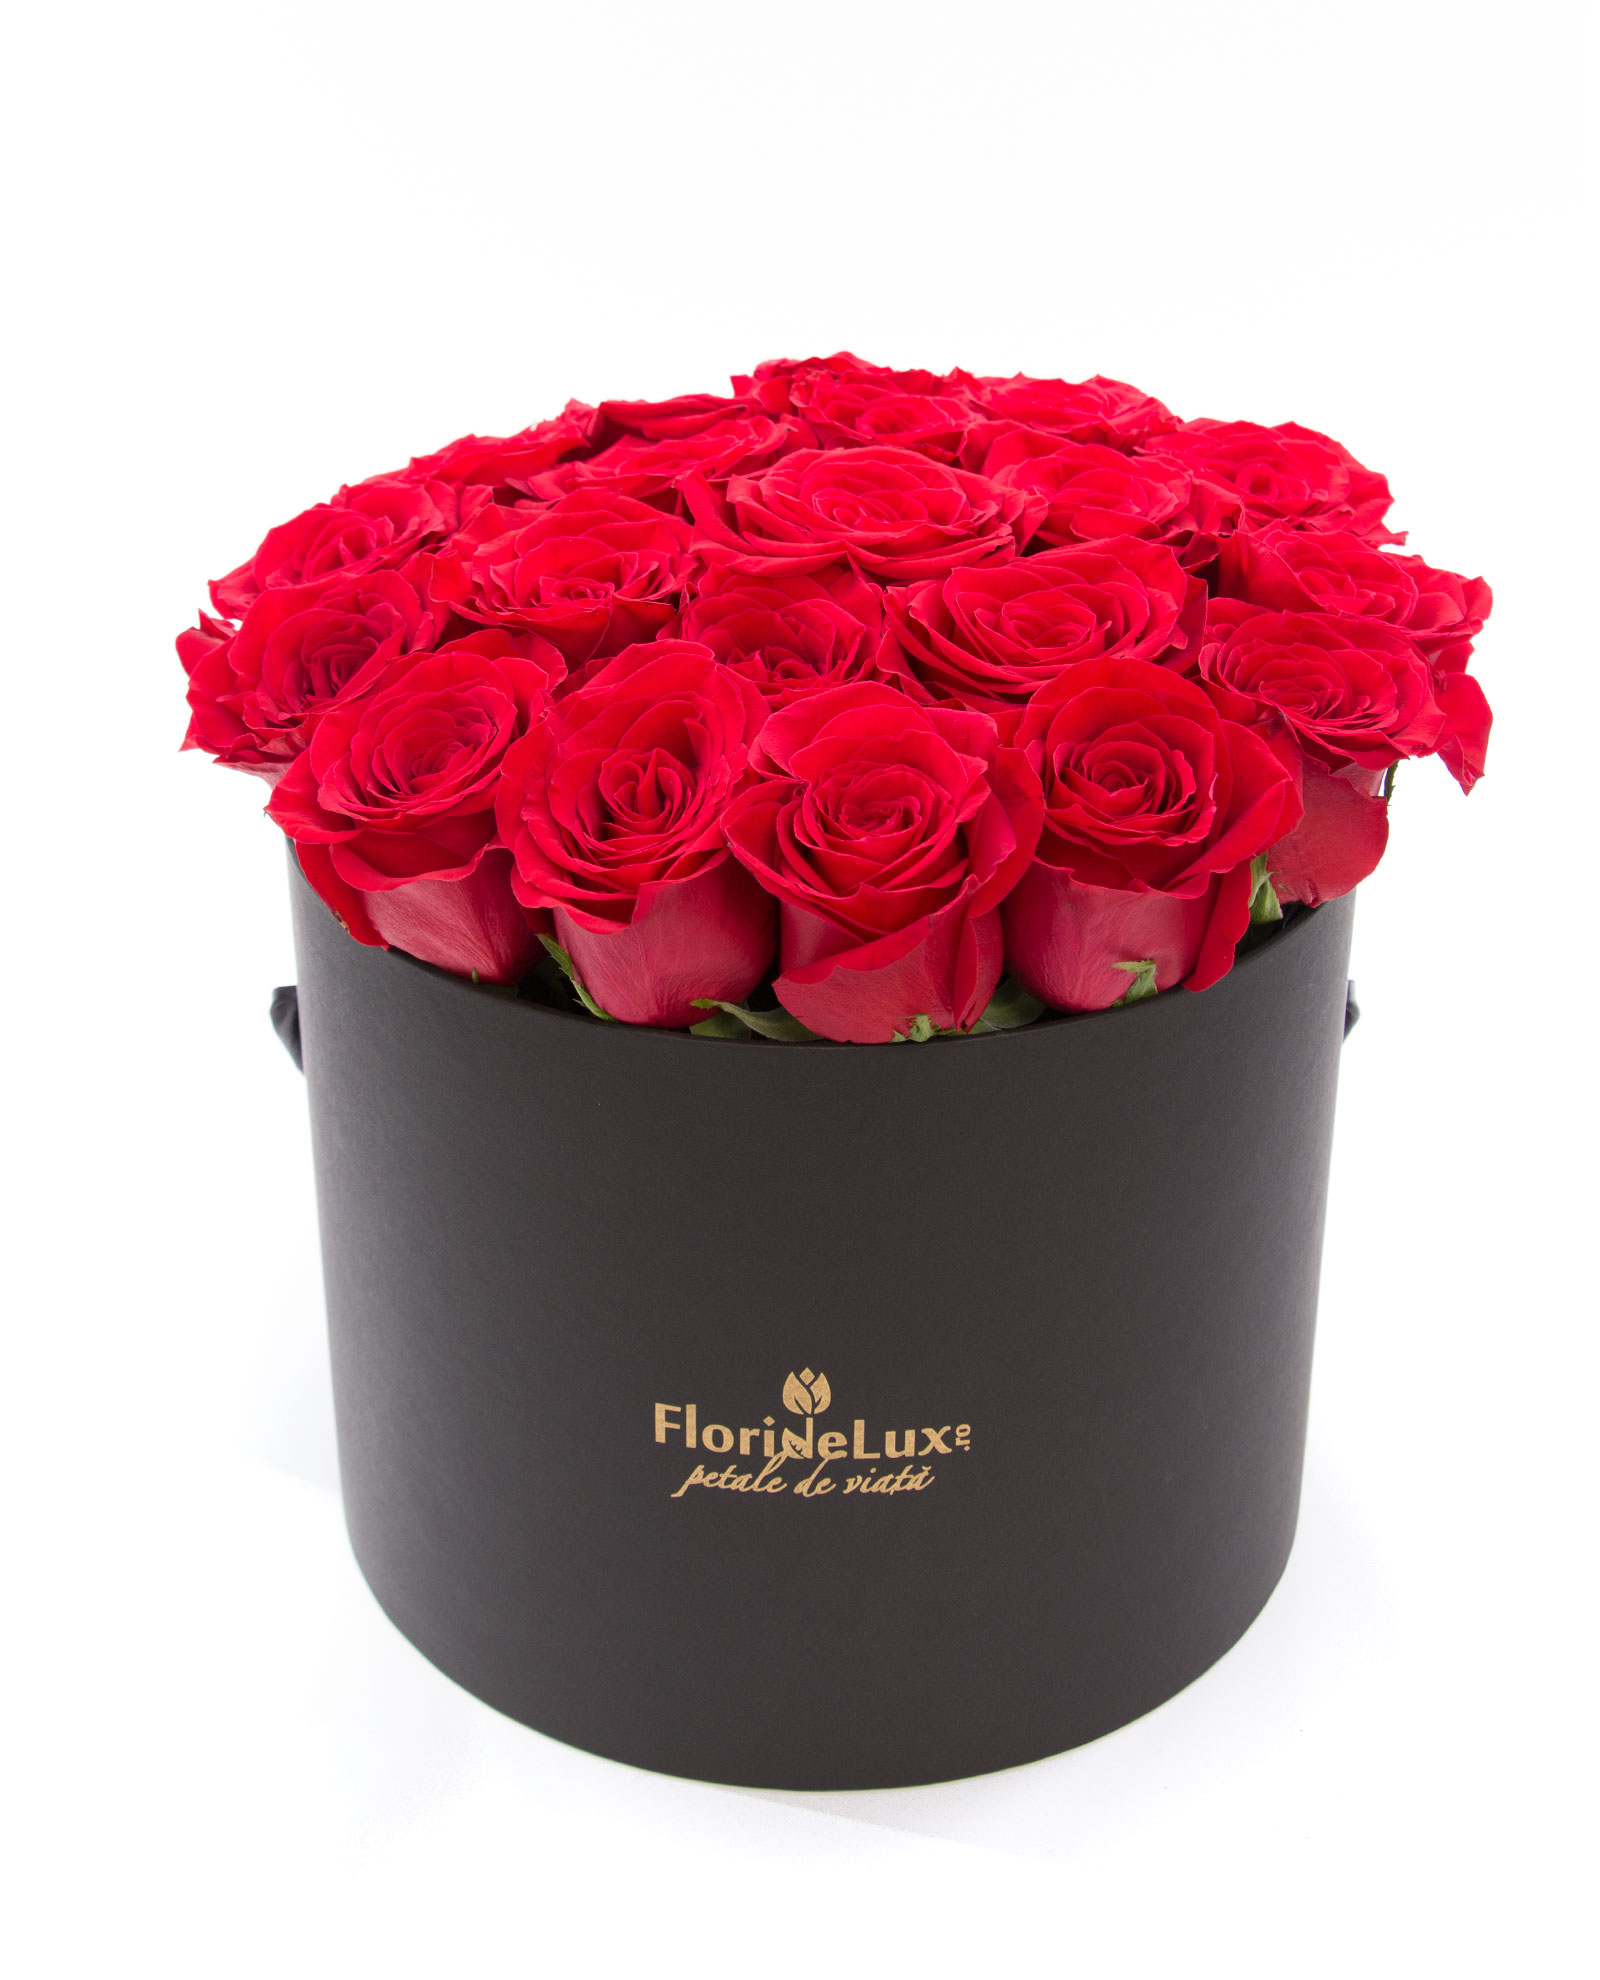 Cutie cu 25 trandafiri rosii si Corton Charlemagne